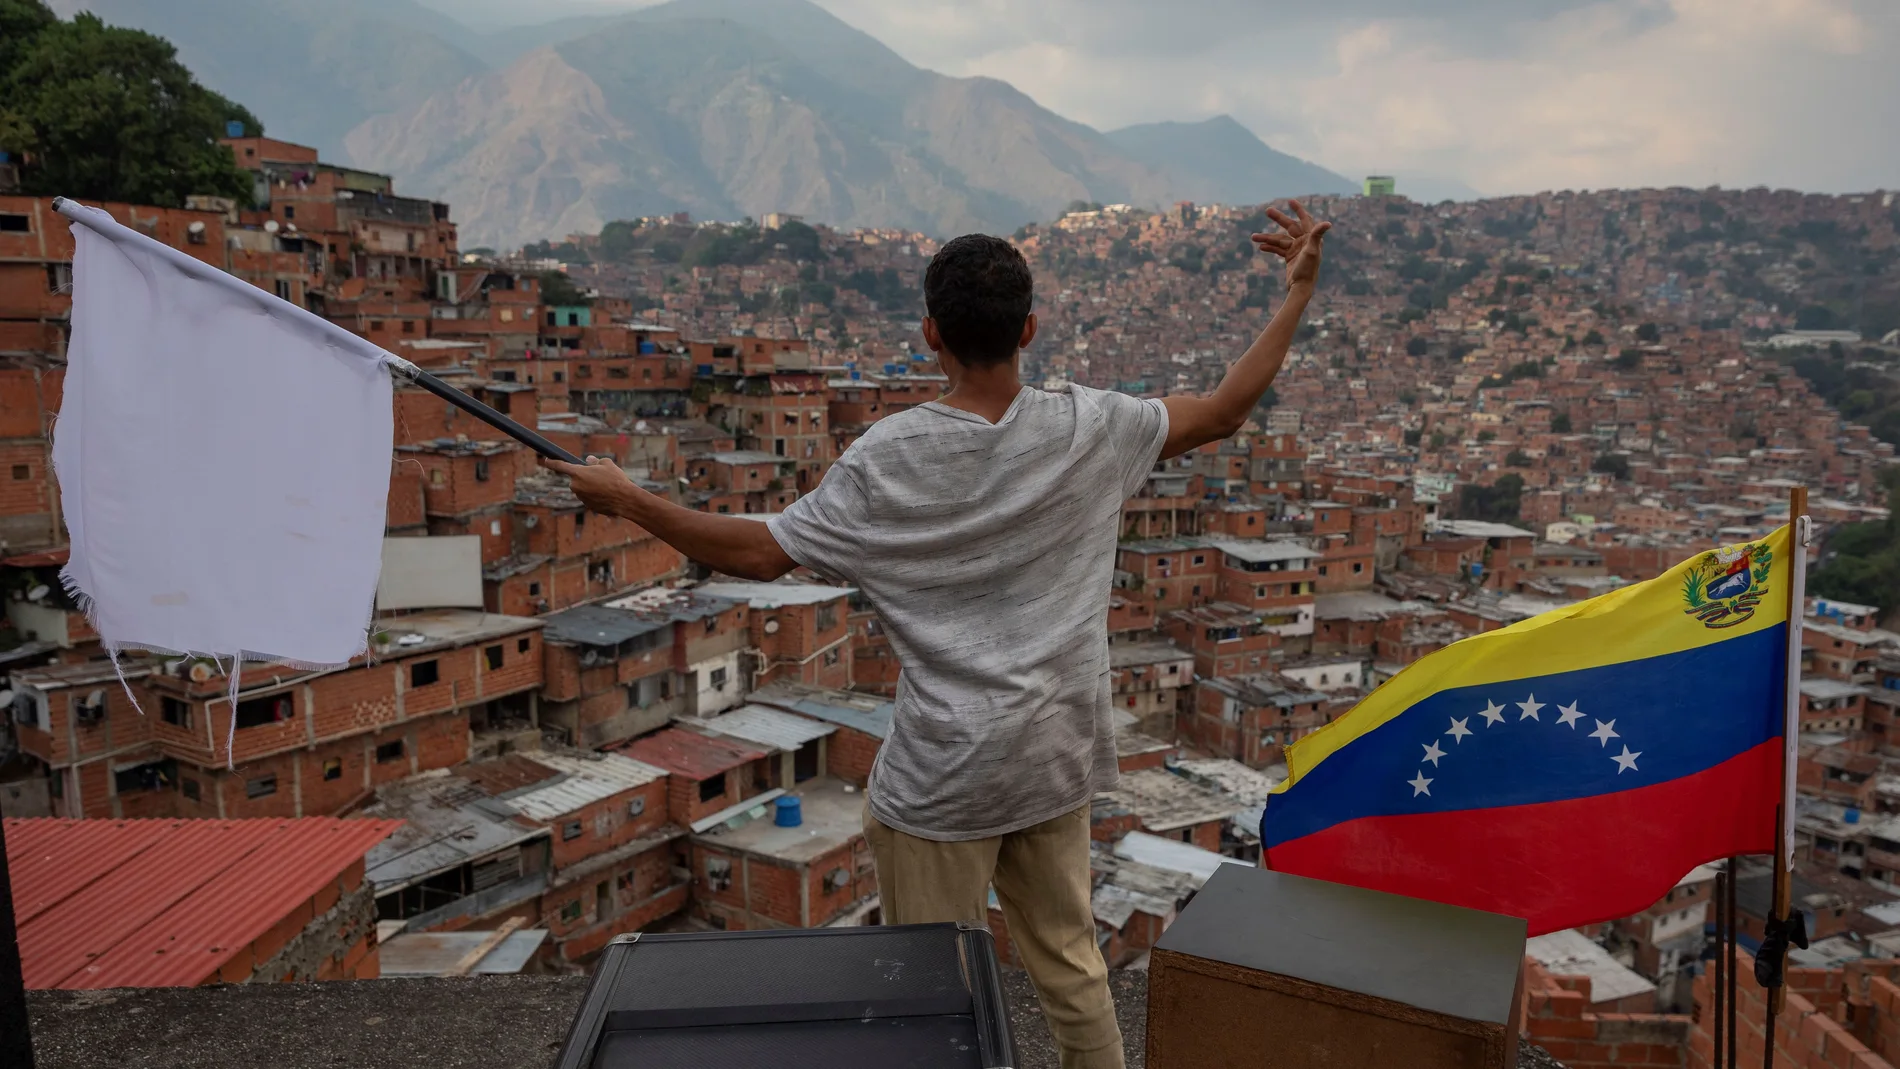 Cine y plegarias para acallar las balas en Venezuela